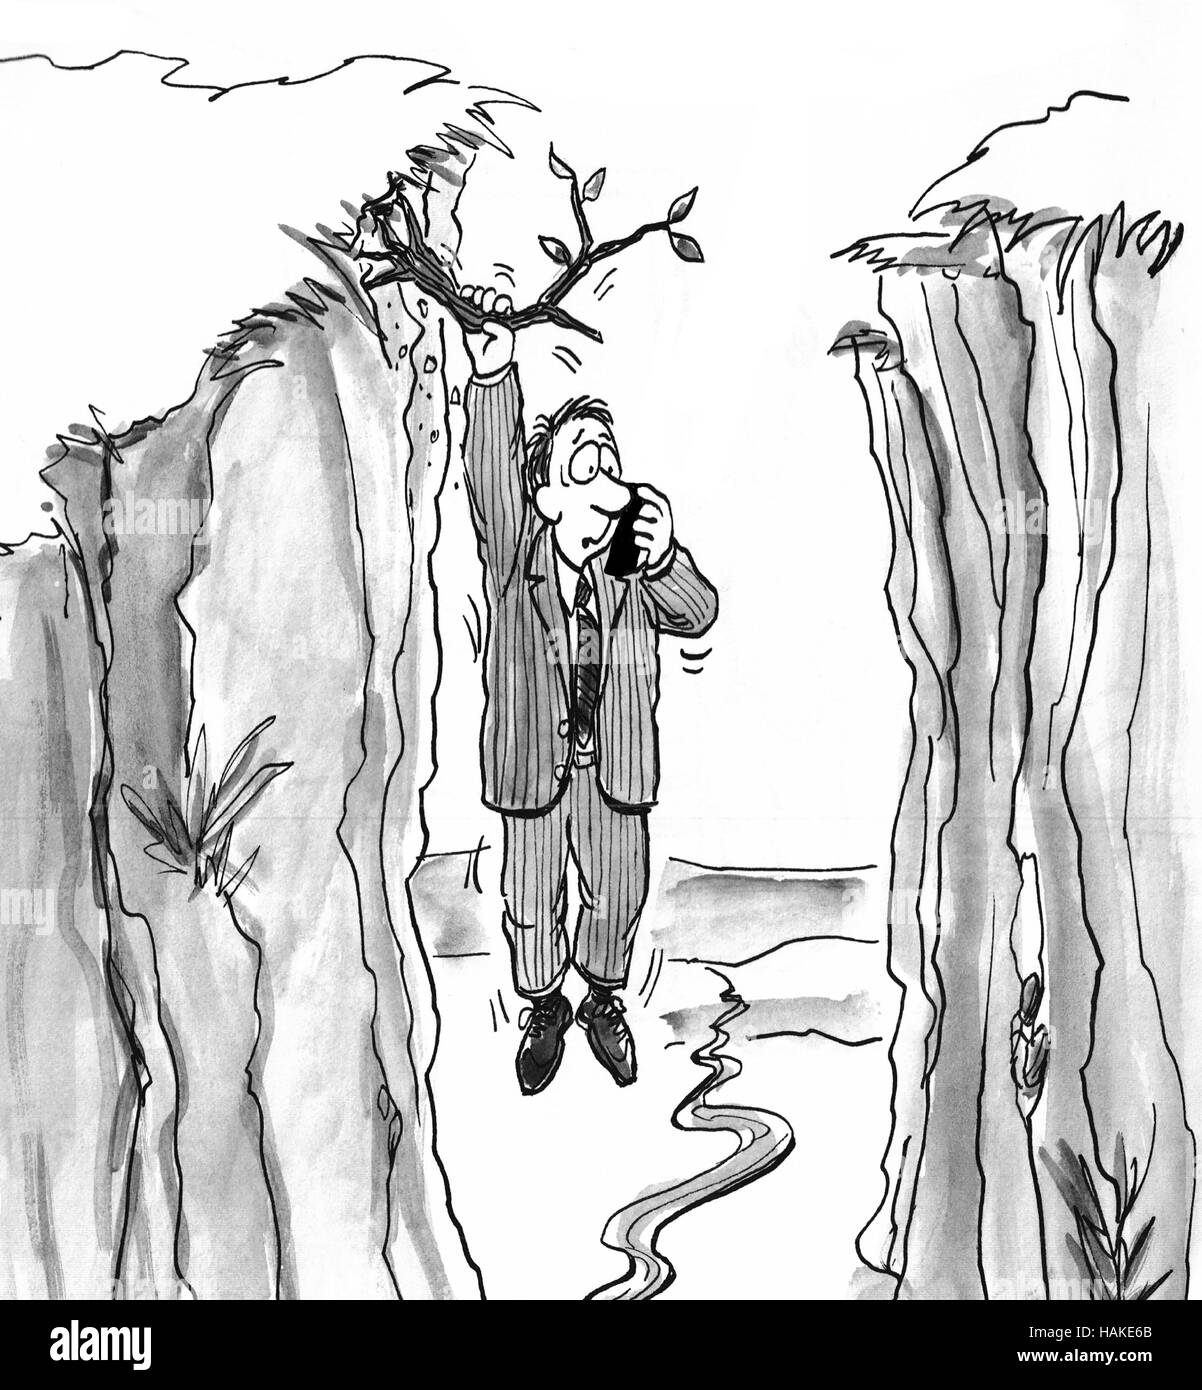 Illustration noir et blanc de l'homme suspendu à un membre de l'arbre appelant à l'aide. Banque D'Images